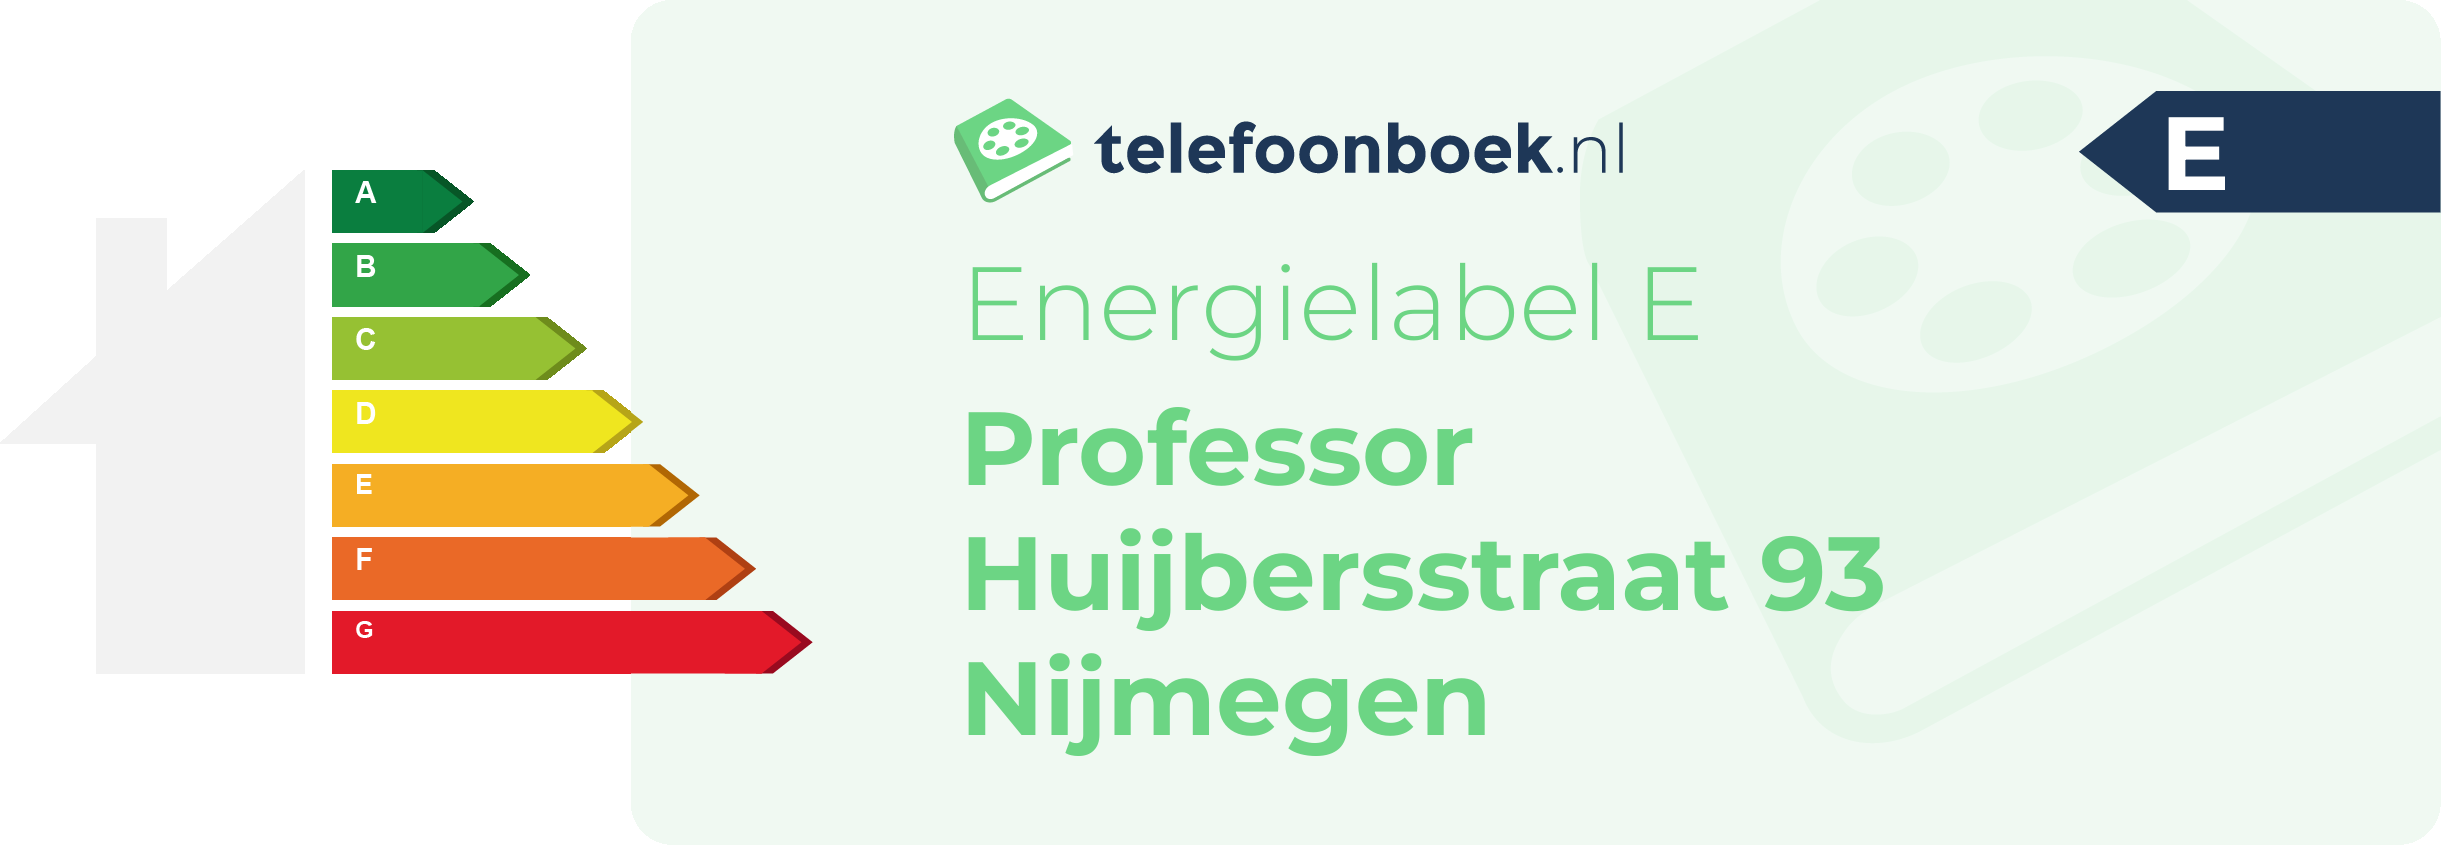 Energielabel Professor Huijbersstraat 93 Nijmegen